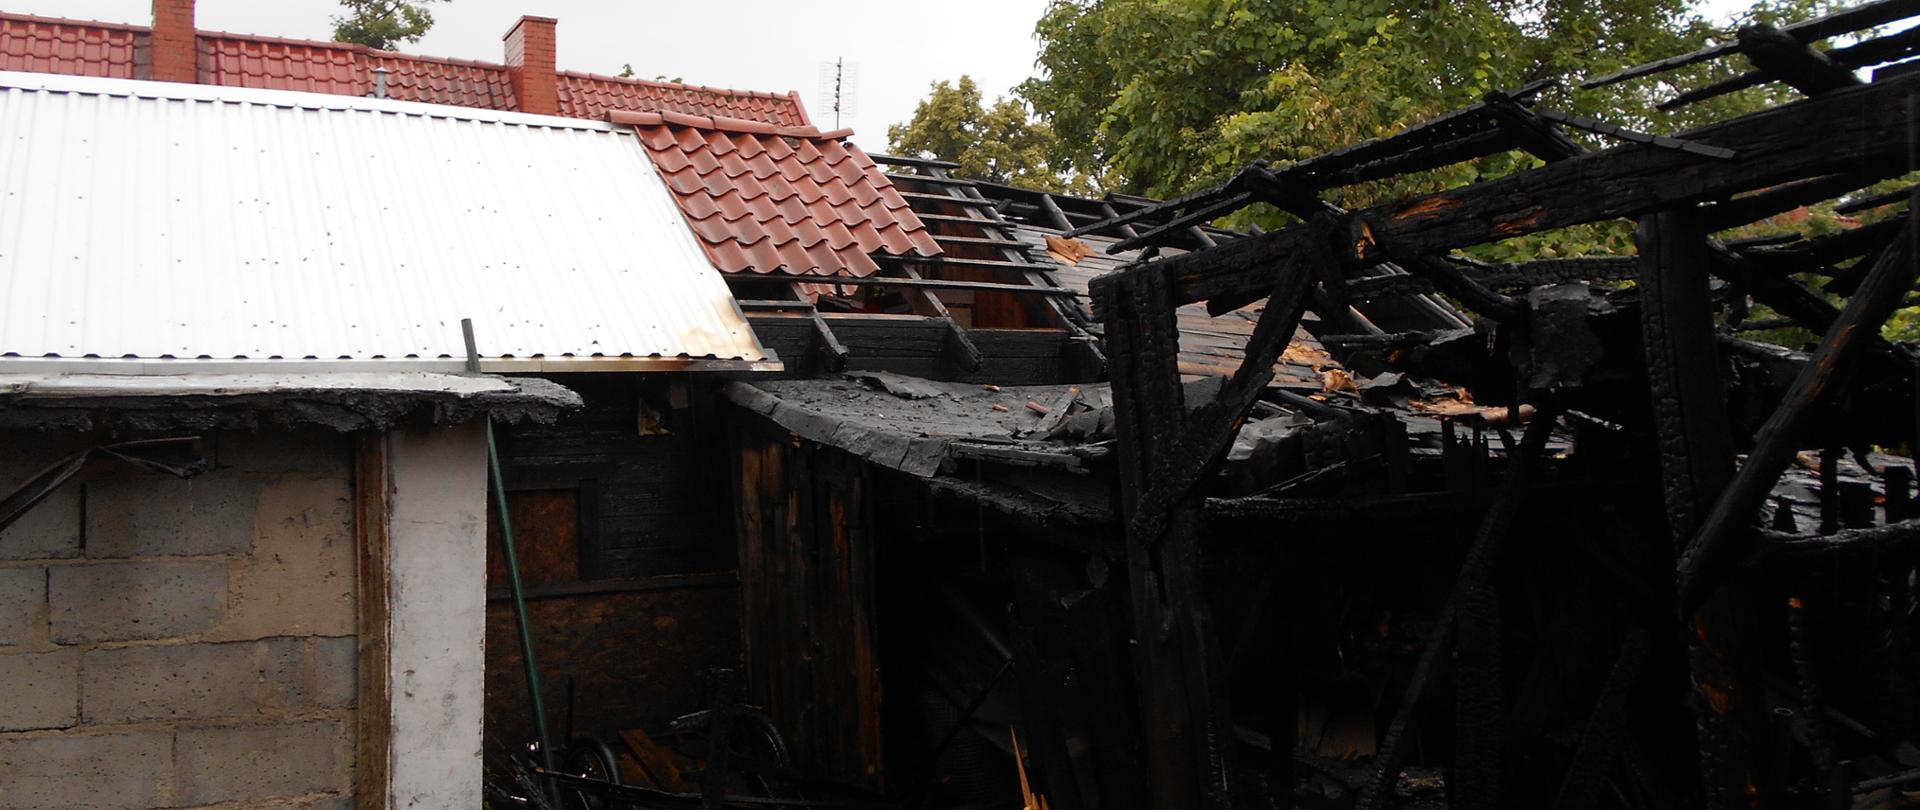 Na zdjęciu widać spalony doszczętnie drewniany budynek gospodarczy przyłączony do budynku mieszkalnego, który został uratowany przed spalaniem